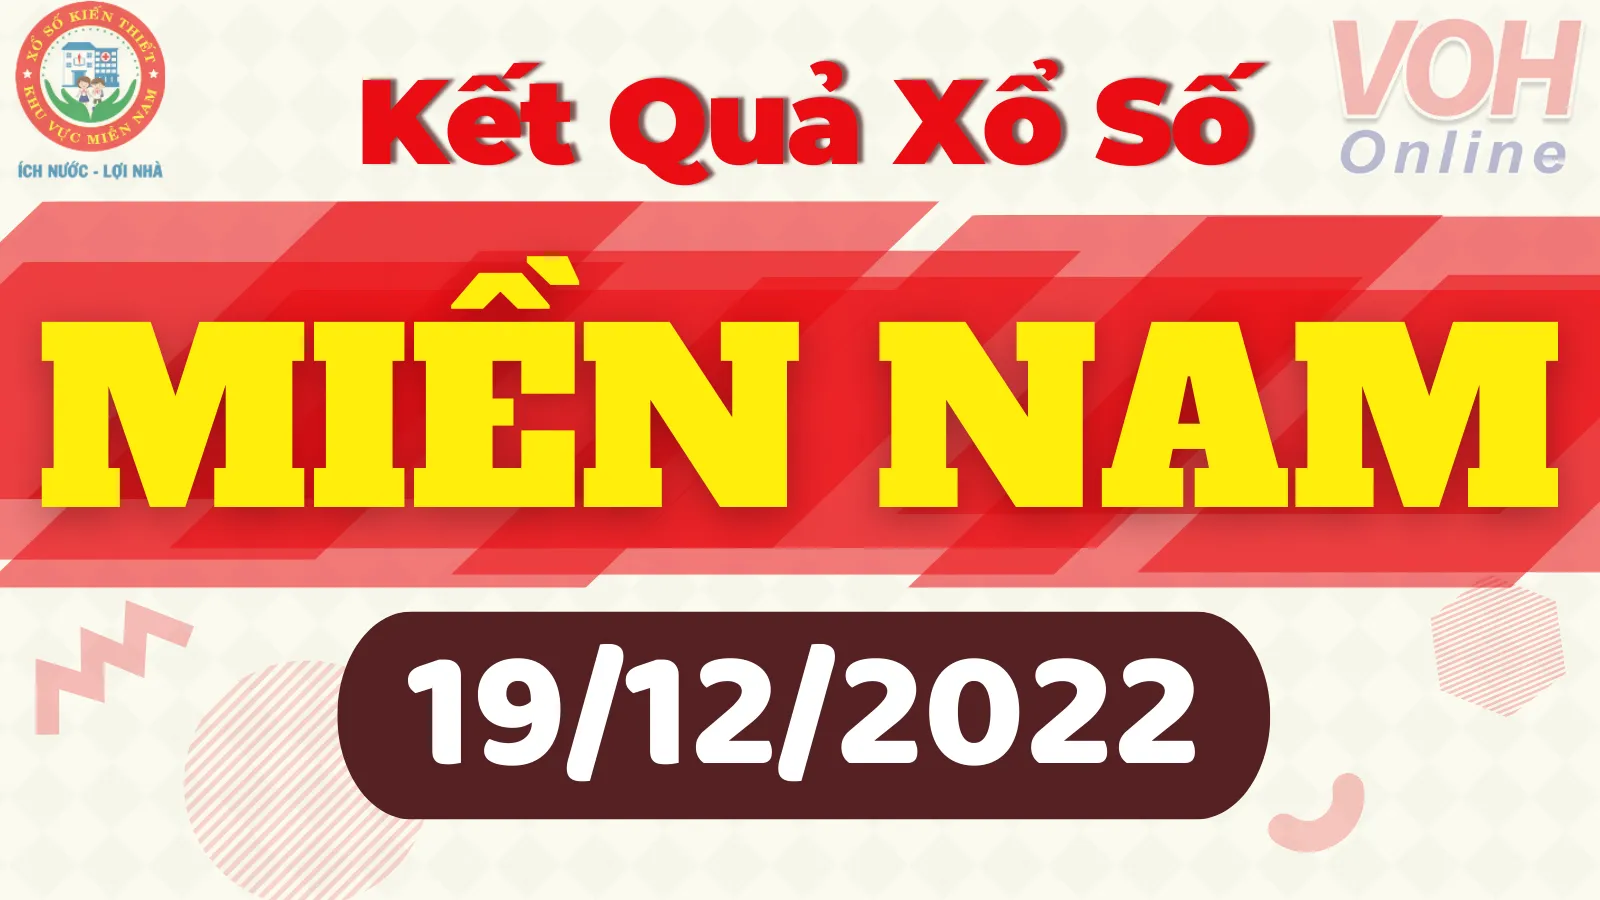 Xổ số miền Nam hôm nay, XSMN 19/12, SXMN 19/12/2022 - Kết quả xổ số ngày 19 tháng 12